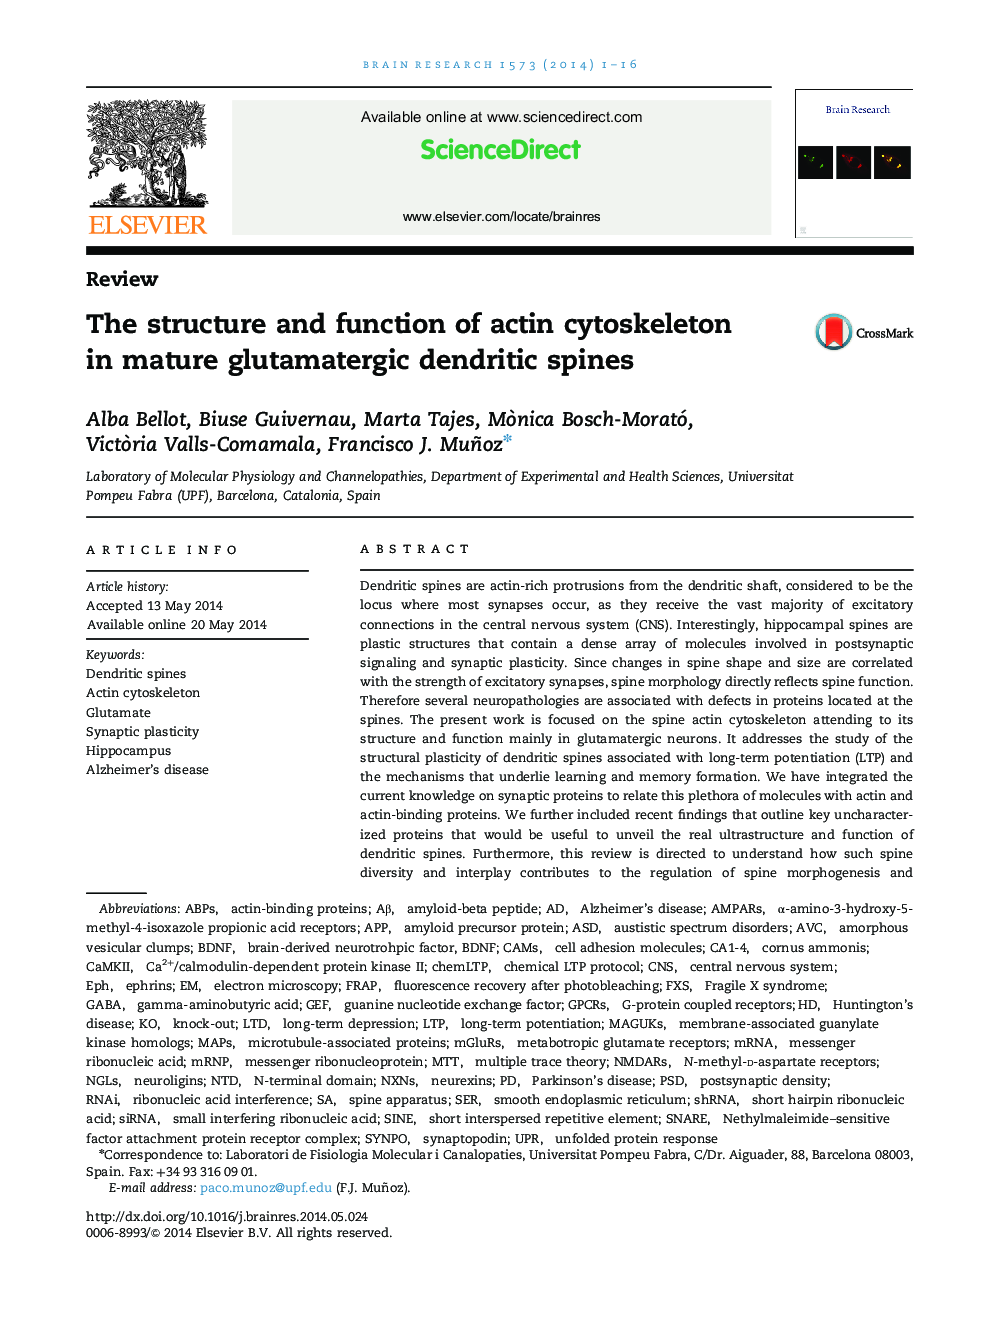 بررسی ساختار و عملکرد سیتو اسکلت اکتین در ستون فقرات دندریتیکی گلوتاماترگیک بالغ 